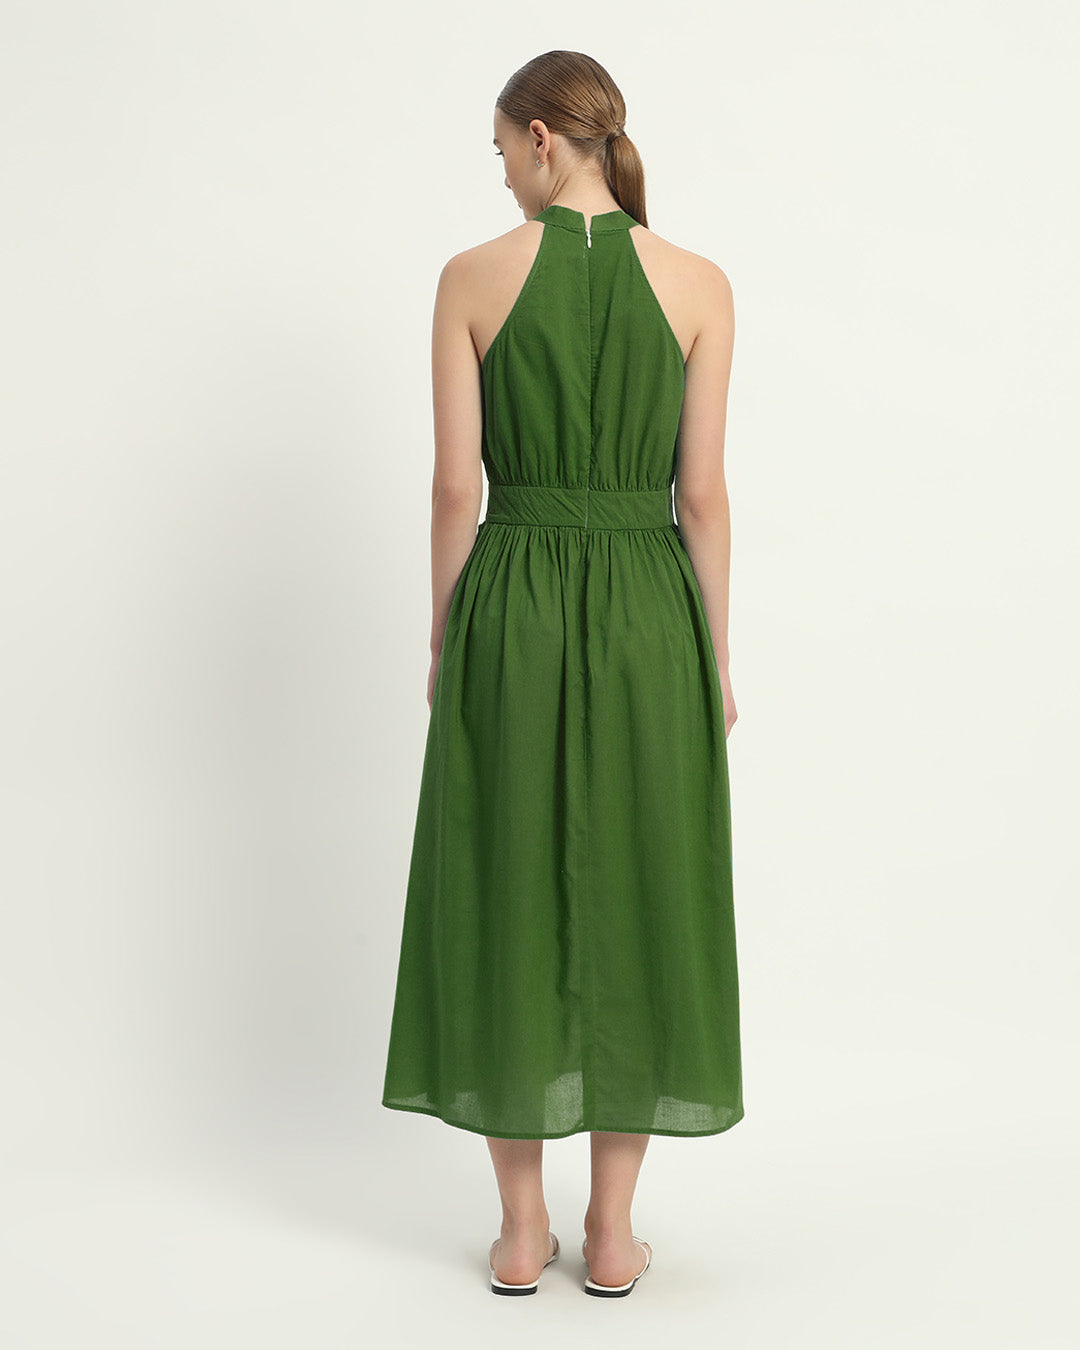 The Massena Emerald Cotton Dress